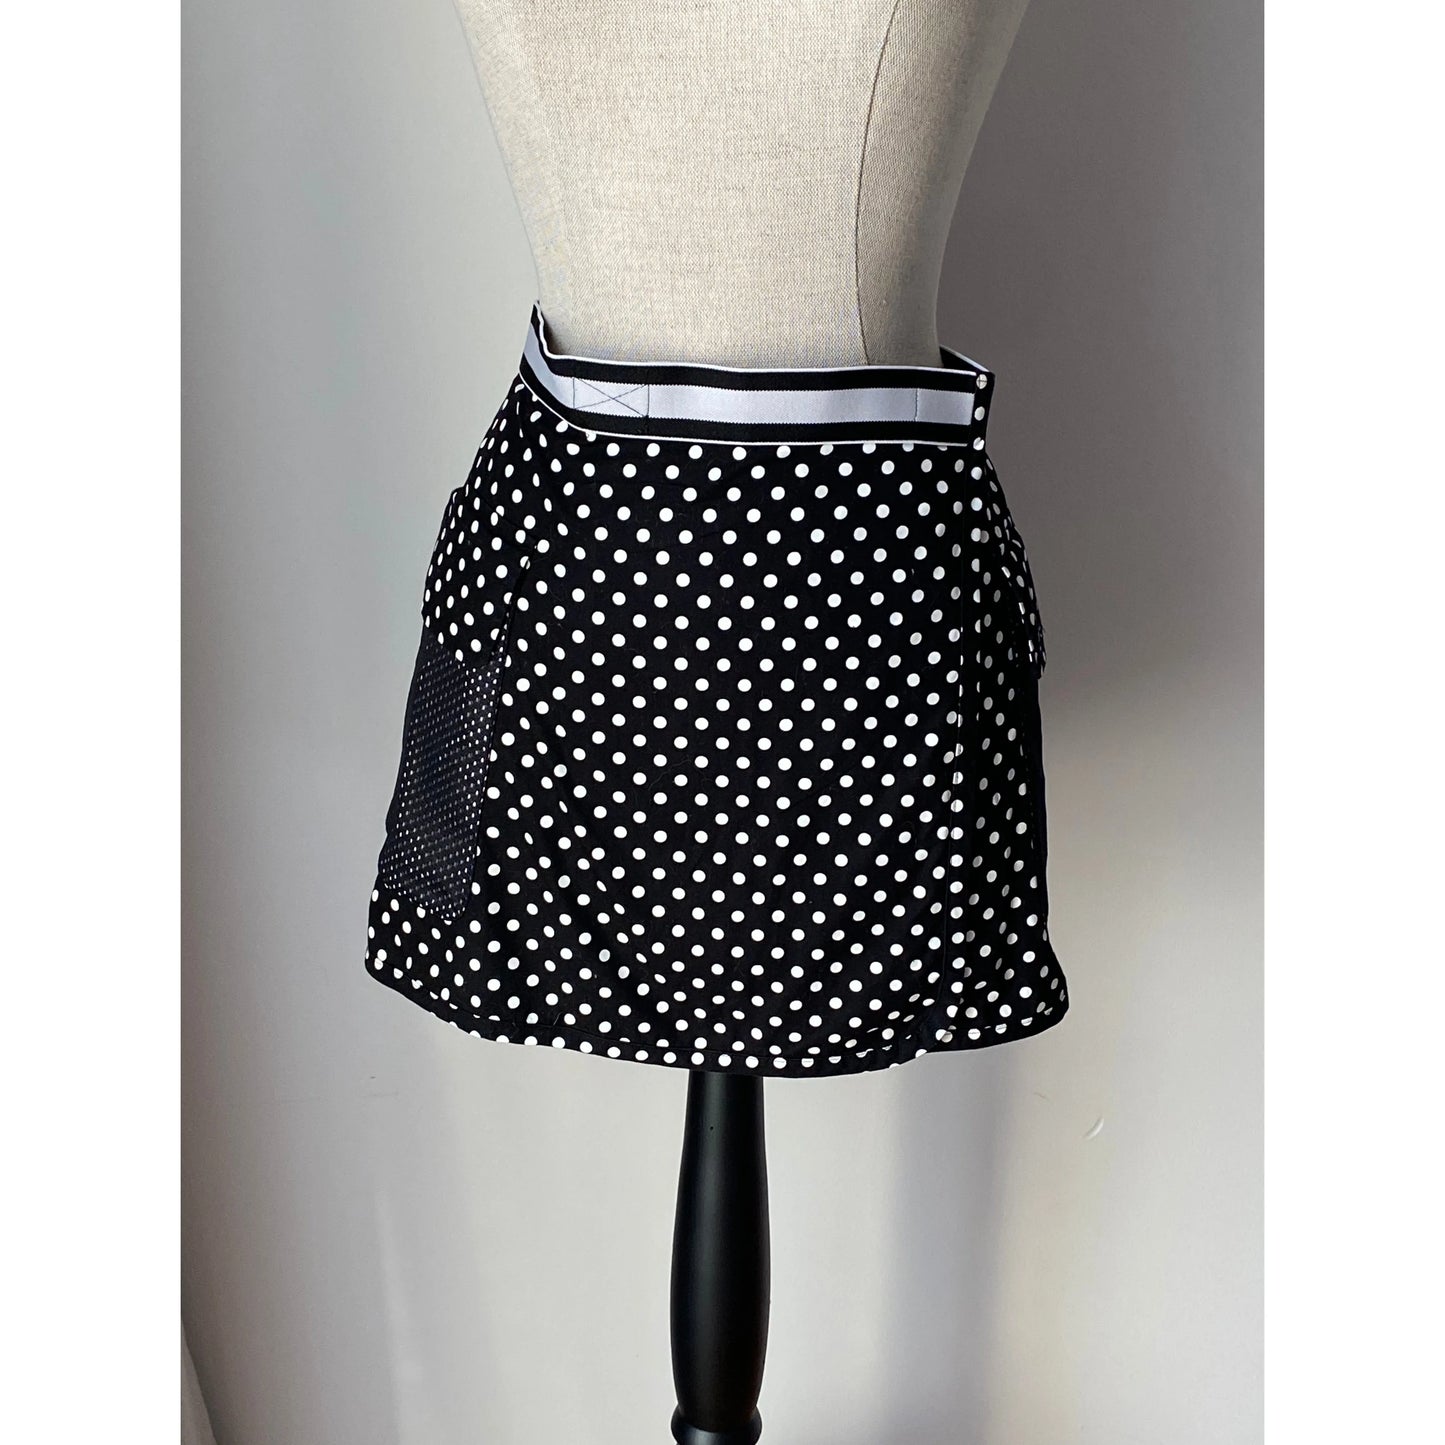 Vintage Dolce Gabbana D&G Polka Dot Skirt (IT 2 / S)